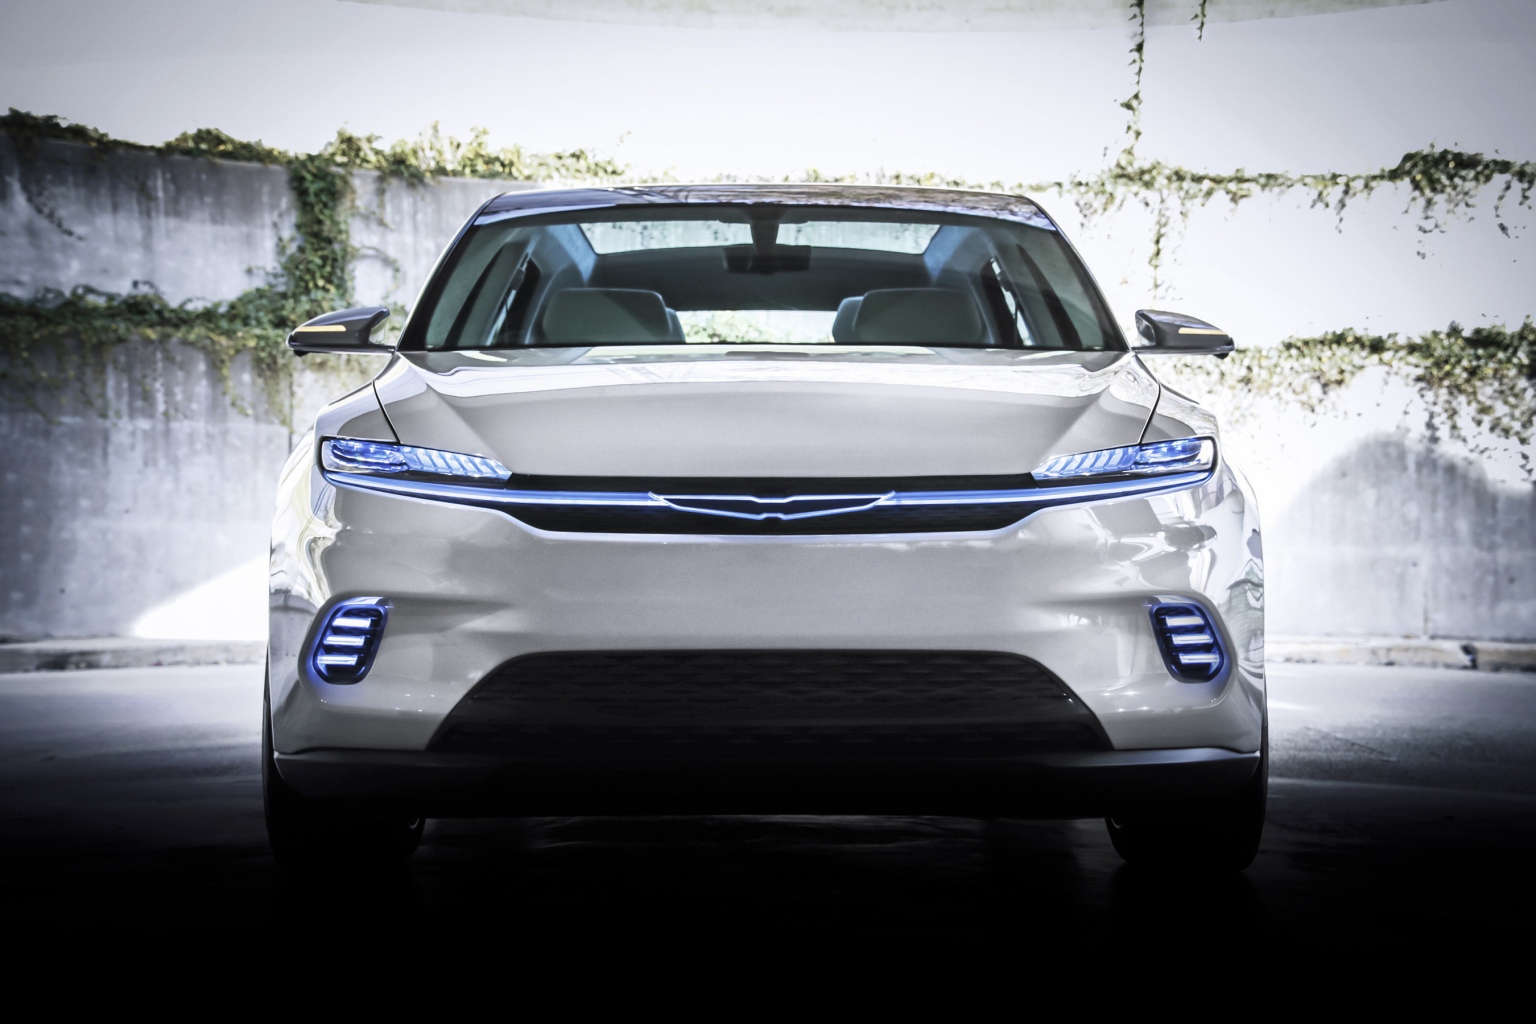 Chrysler Unveils Airflow Concept at CES 2022, Announces Plan for Brand